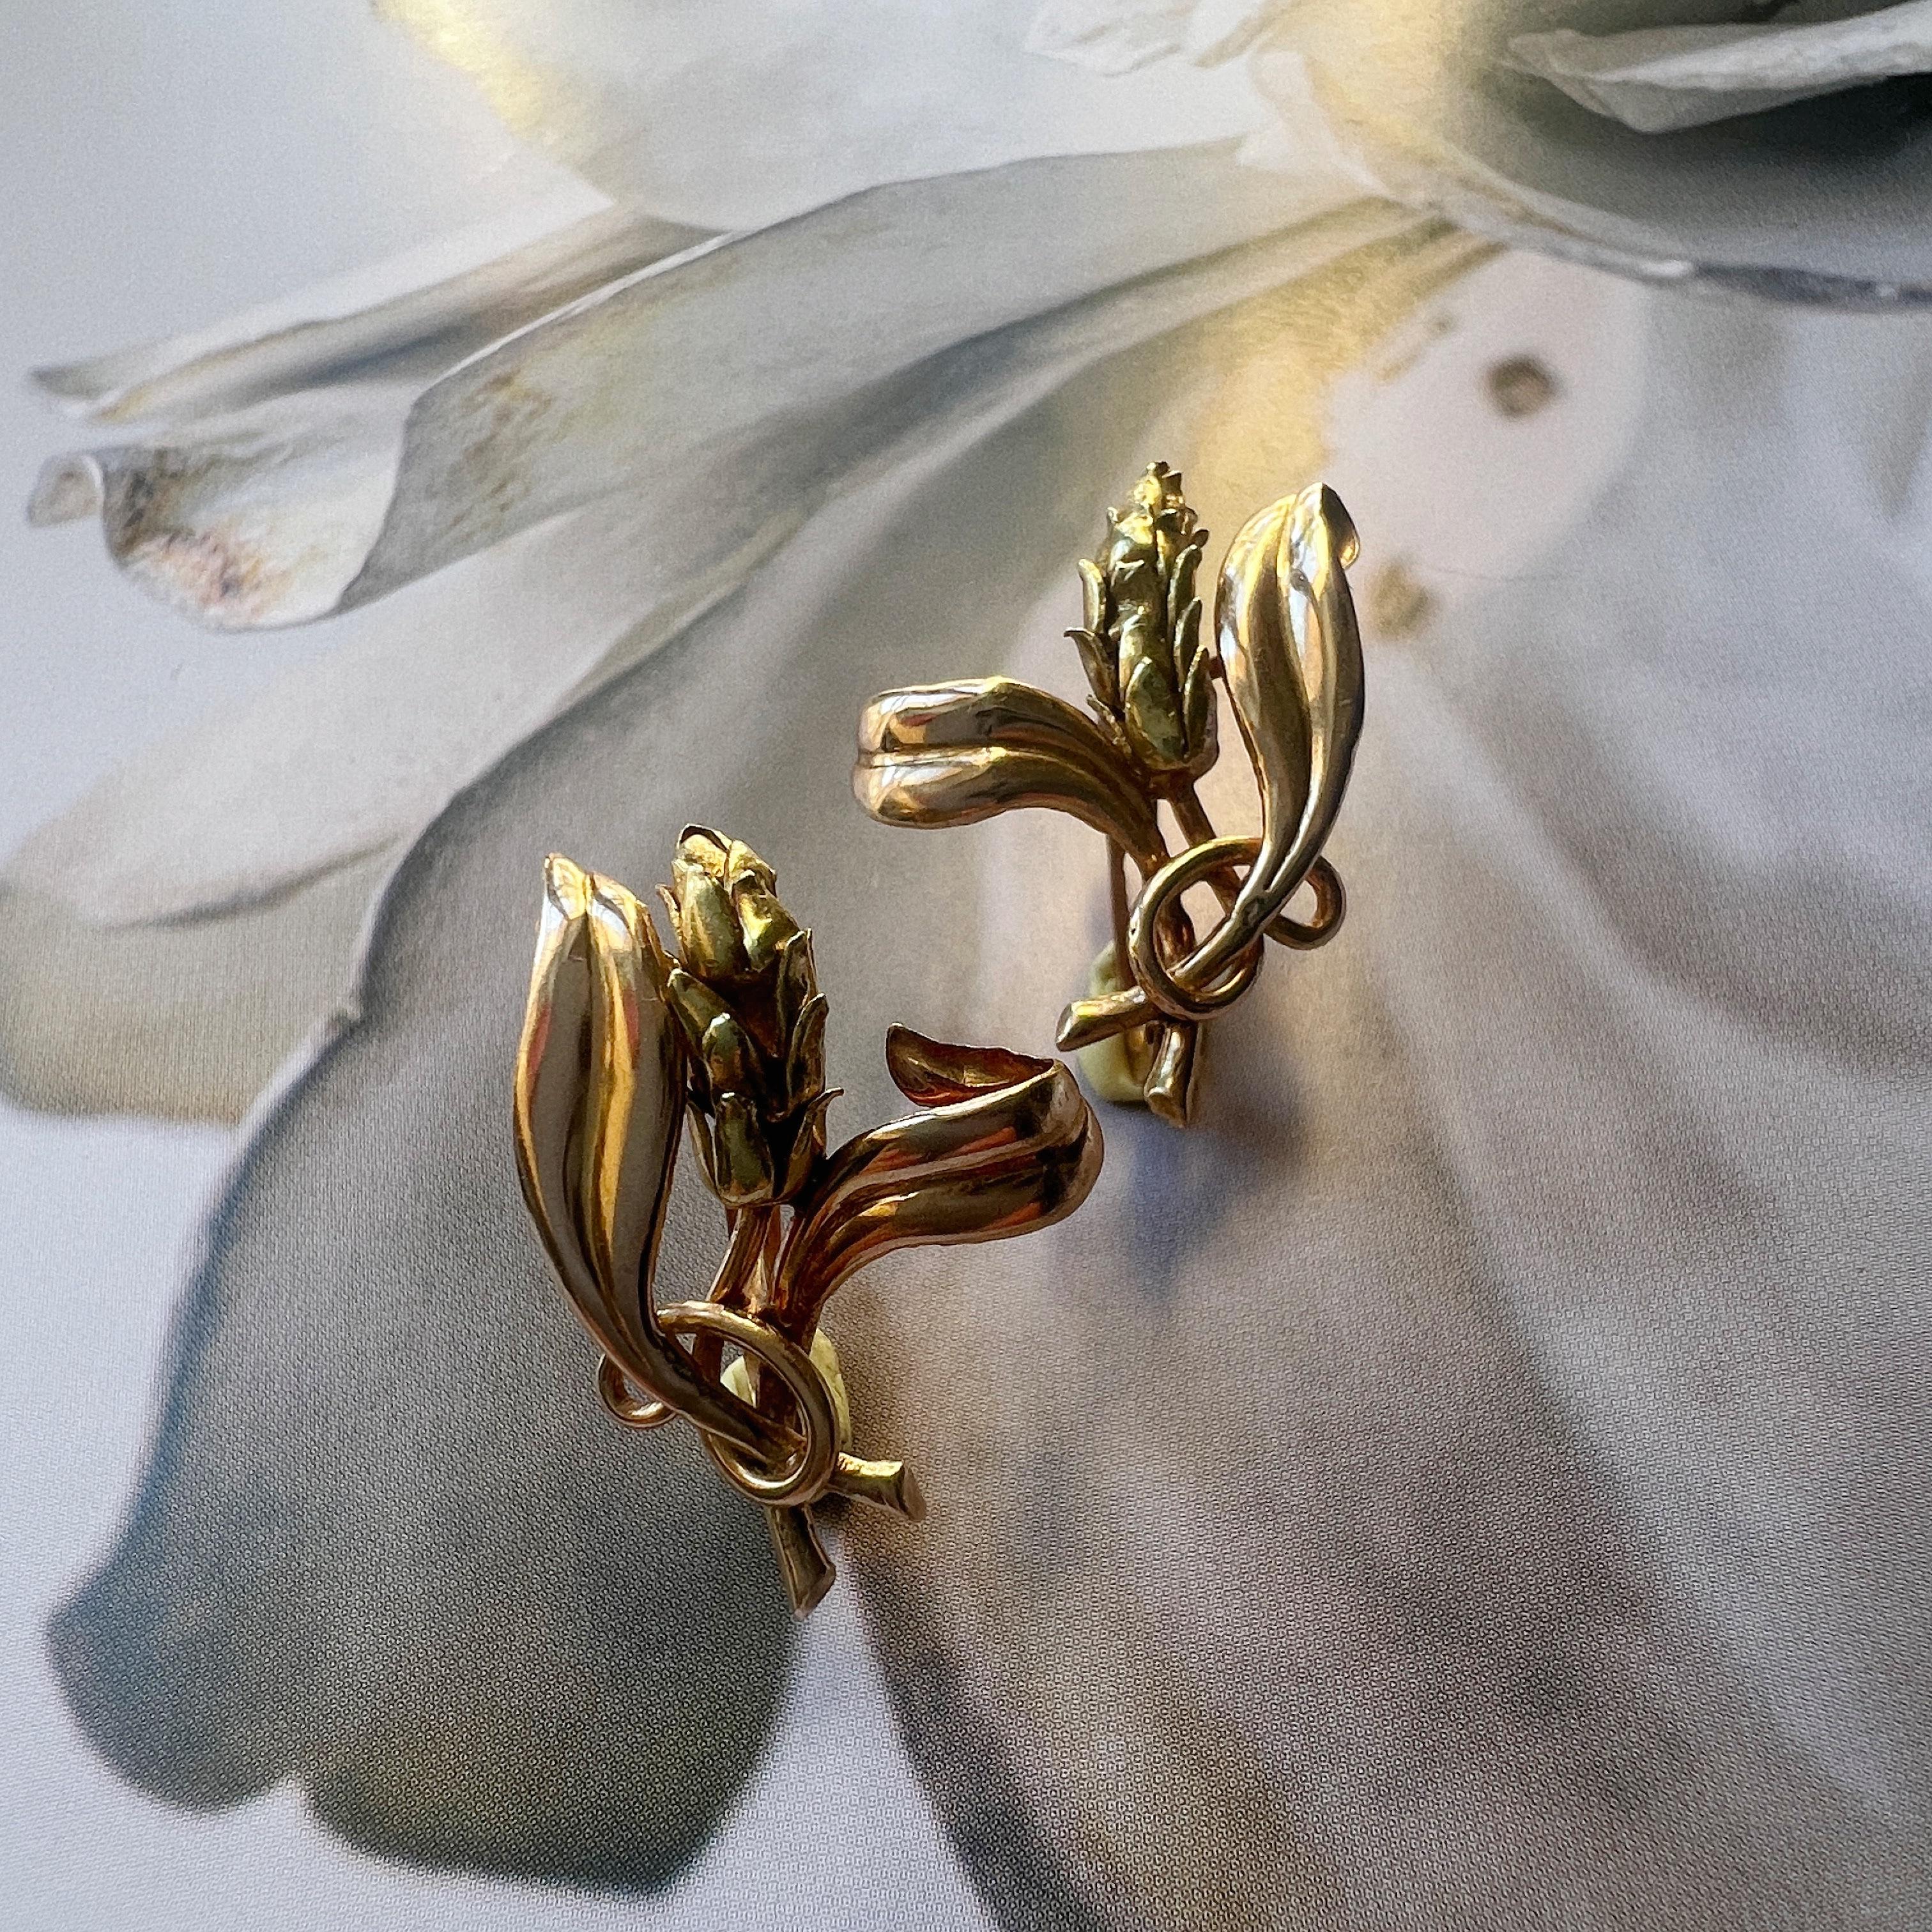 Zum Verkauf steht ein schönes Paar 18K Gold Weizen Ohren Ohrringe. Jeder Ohrring ist mit einer sorgfältig gearbeiteten Weizenpflanze und ihren Blättern auf beiden Seiten versehen. Das 18-karätige Gold ist kunstvoll verarbeitet, um die organische